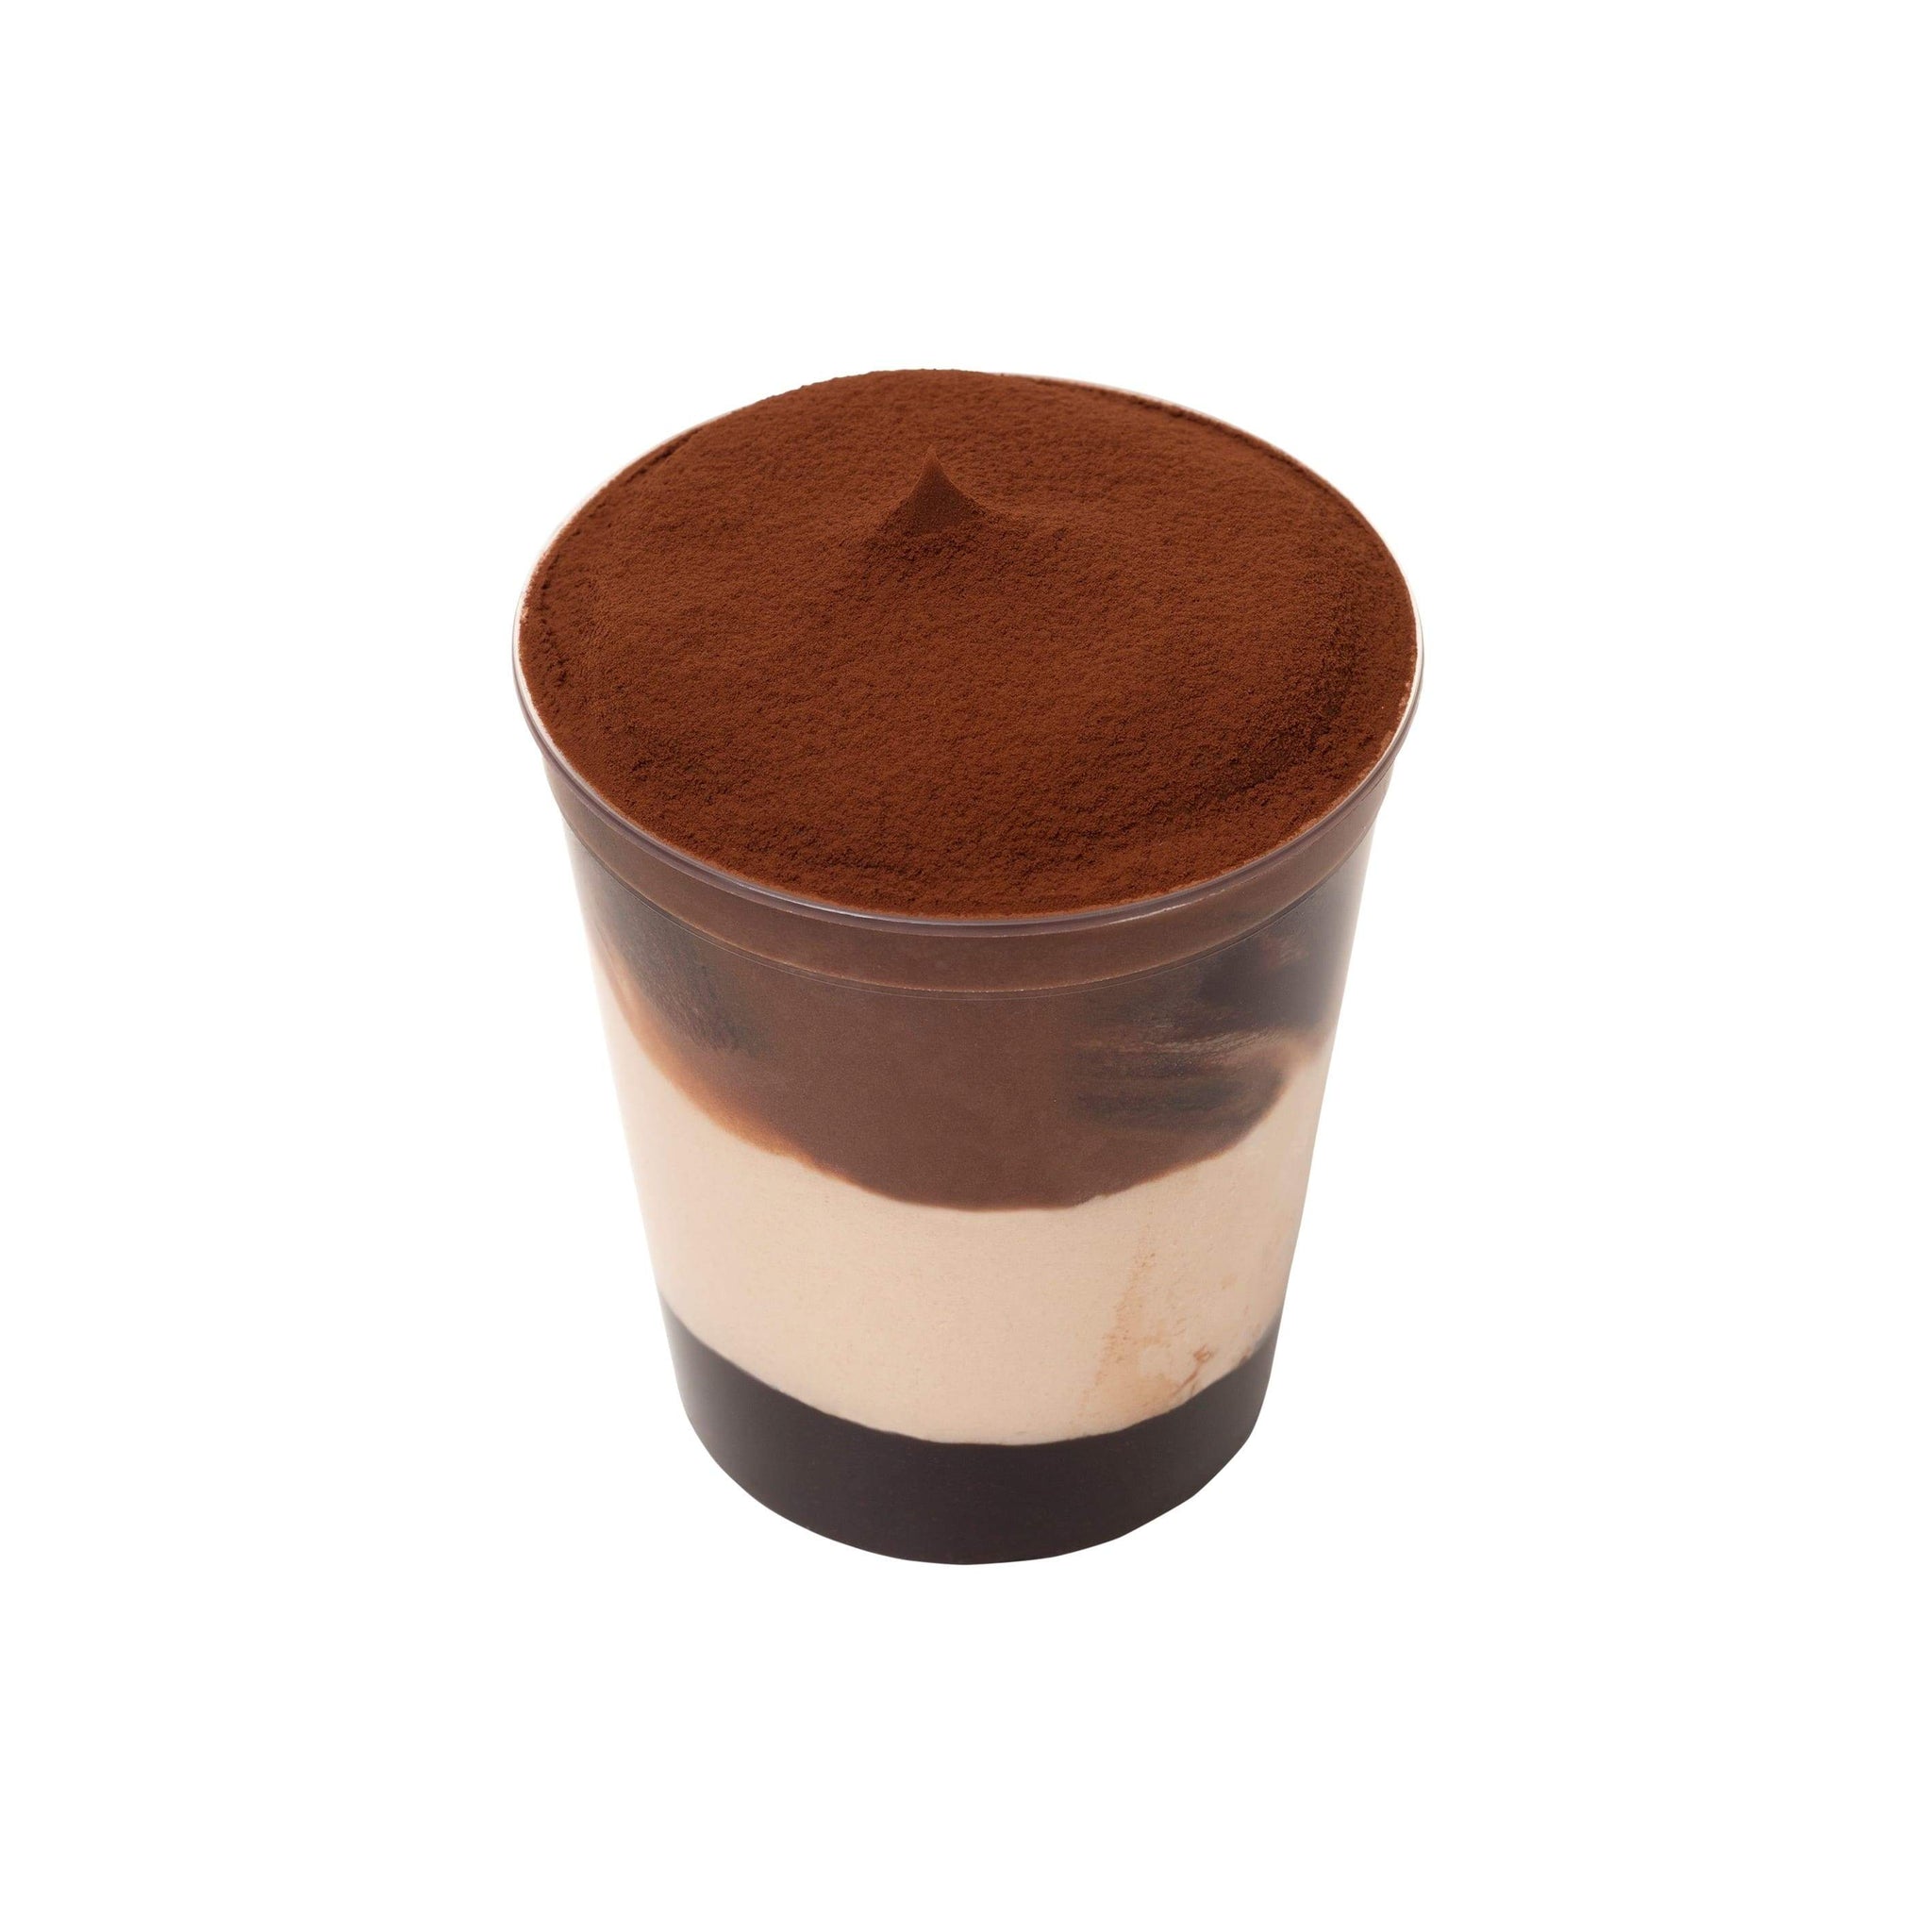 Coppetta Gelato Cioccolato e Nocciola Bindi: gelato alla nocciola e gelato al cioccolato con variegatura al cioccolato.